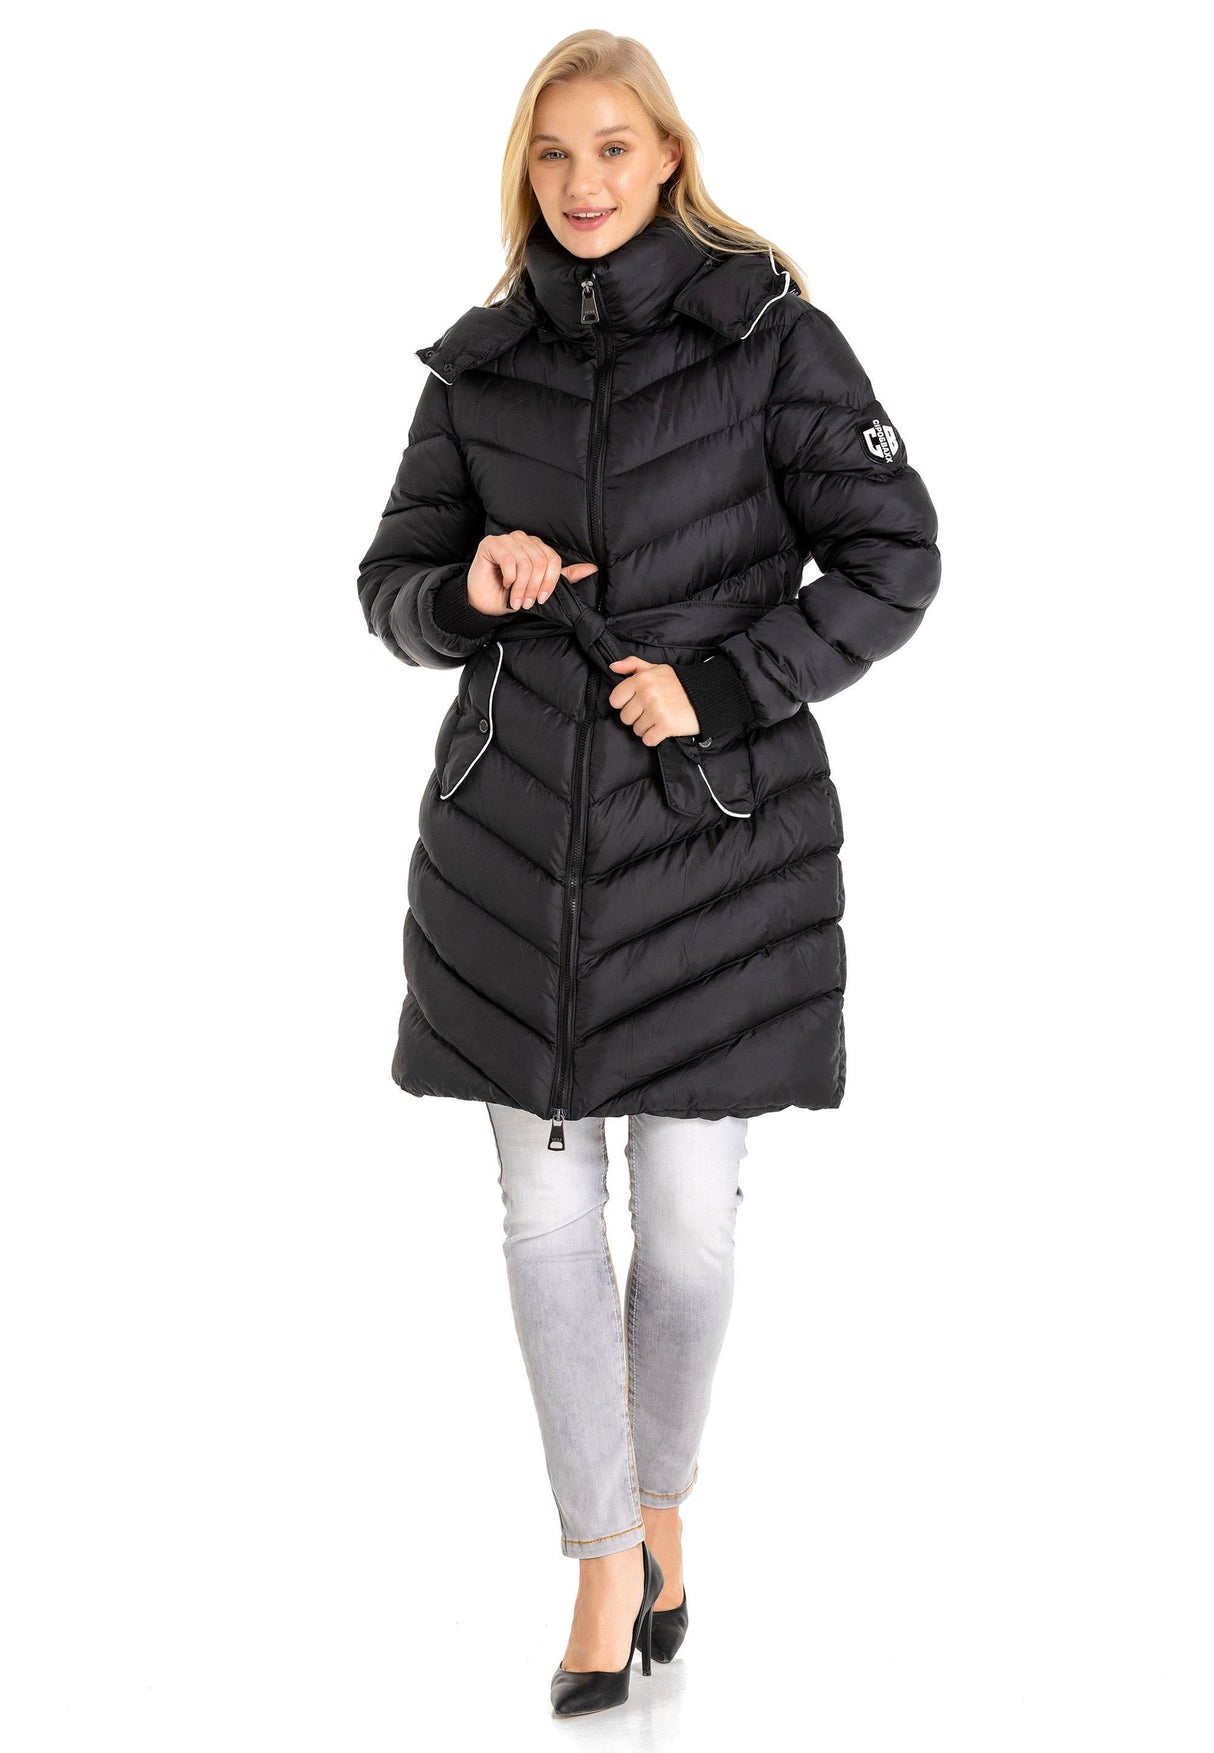 WM135 damska zimowa kurtka pikowana z zdejmowanym kapturem